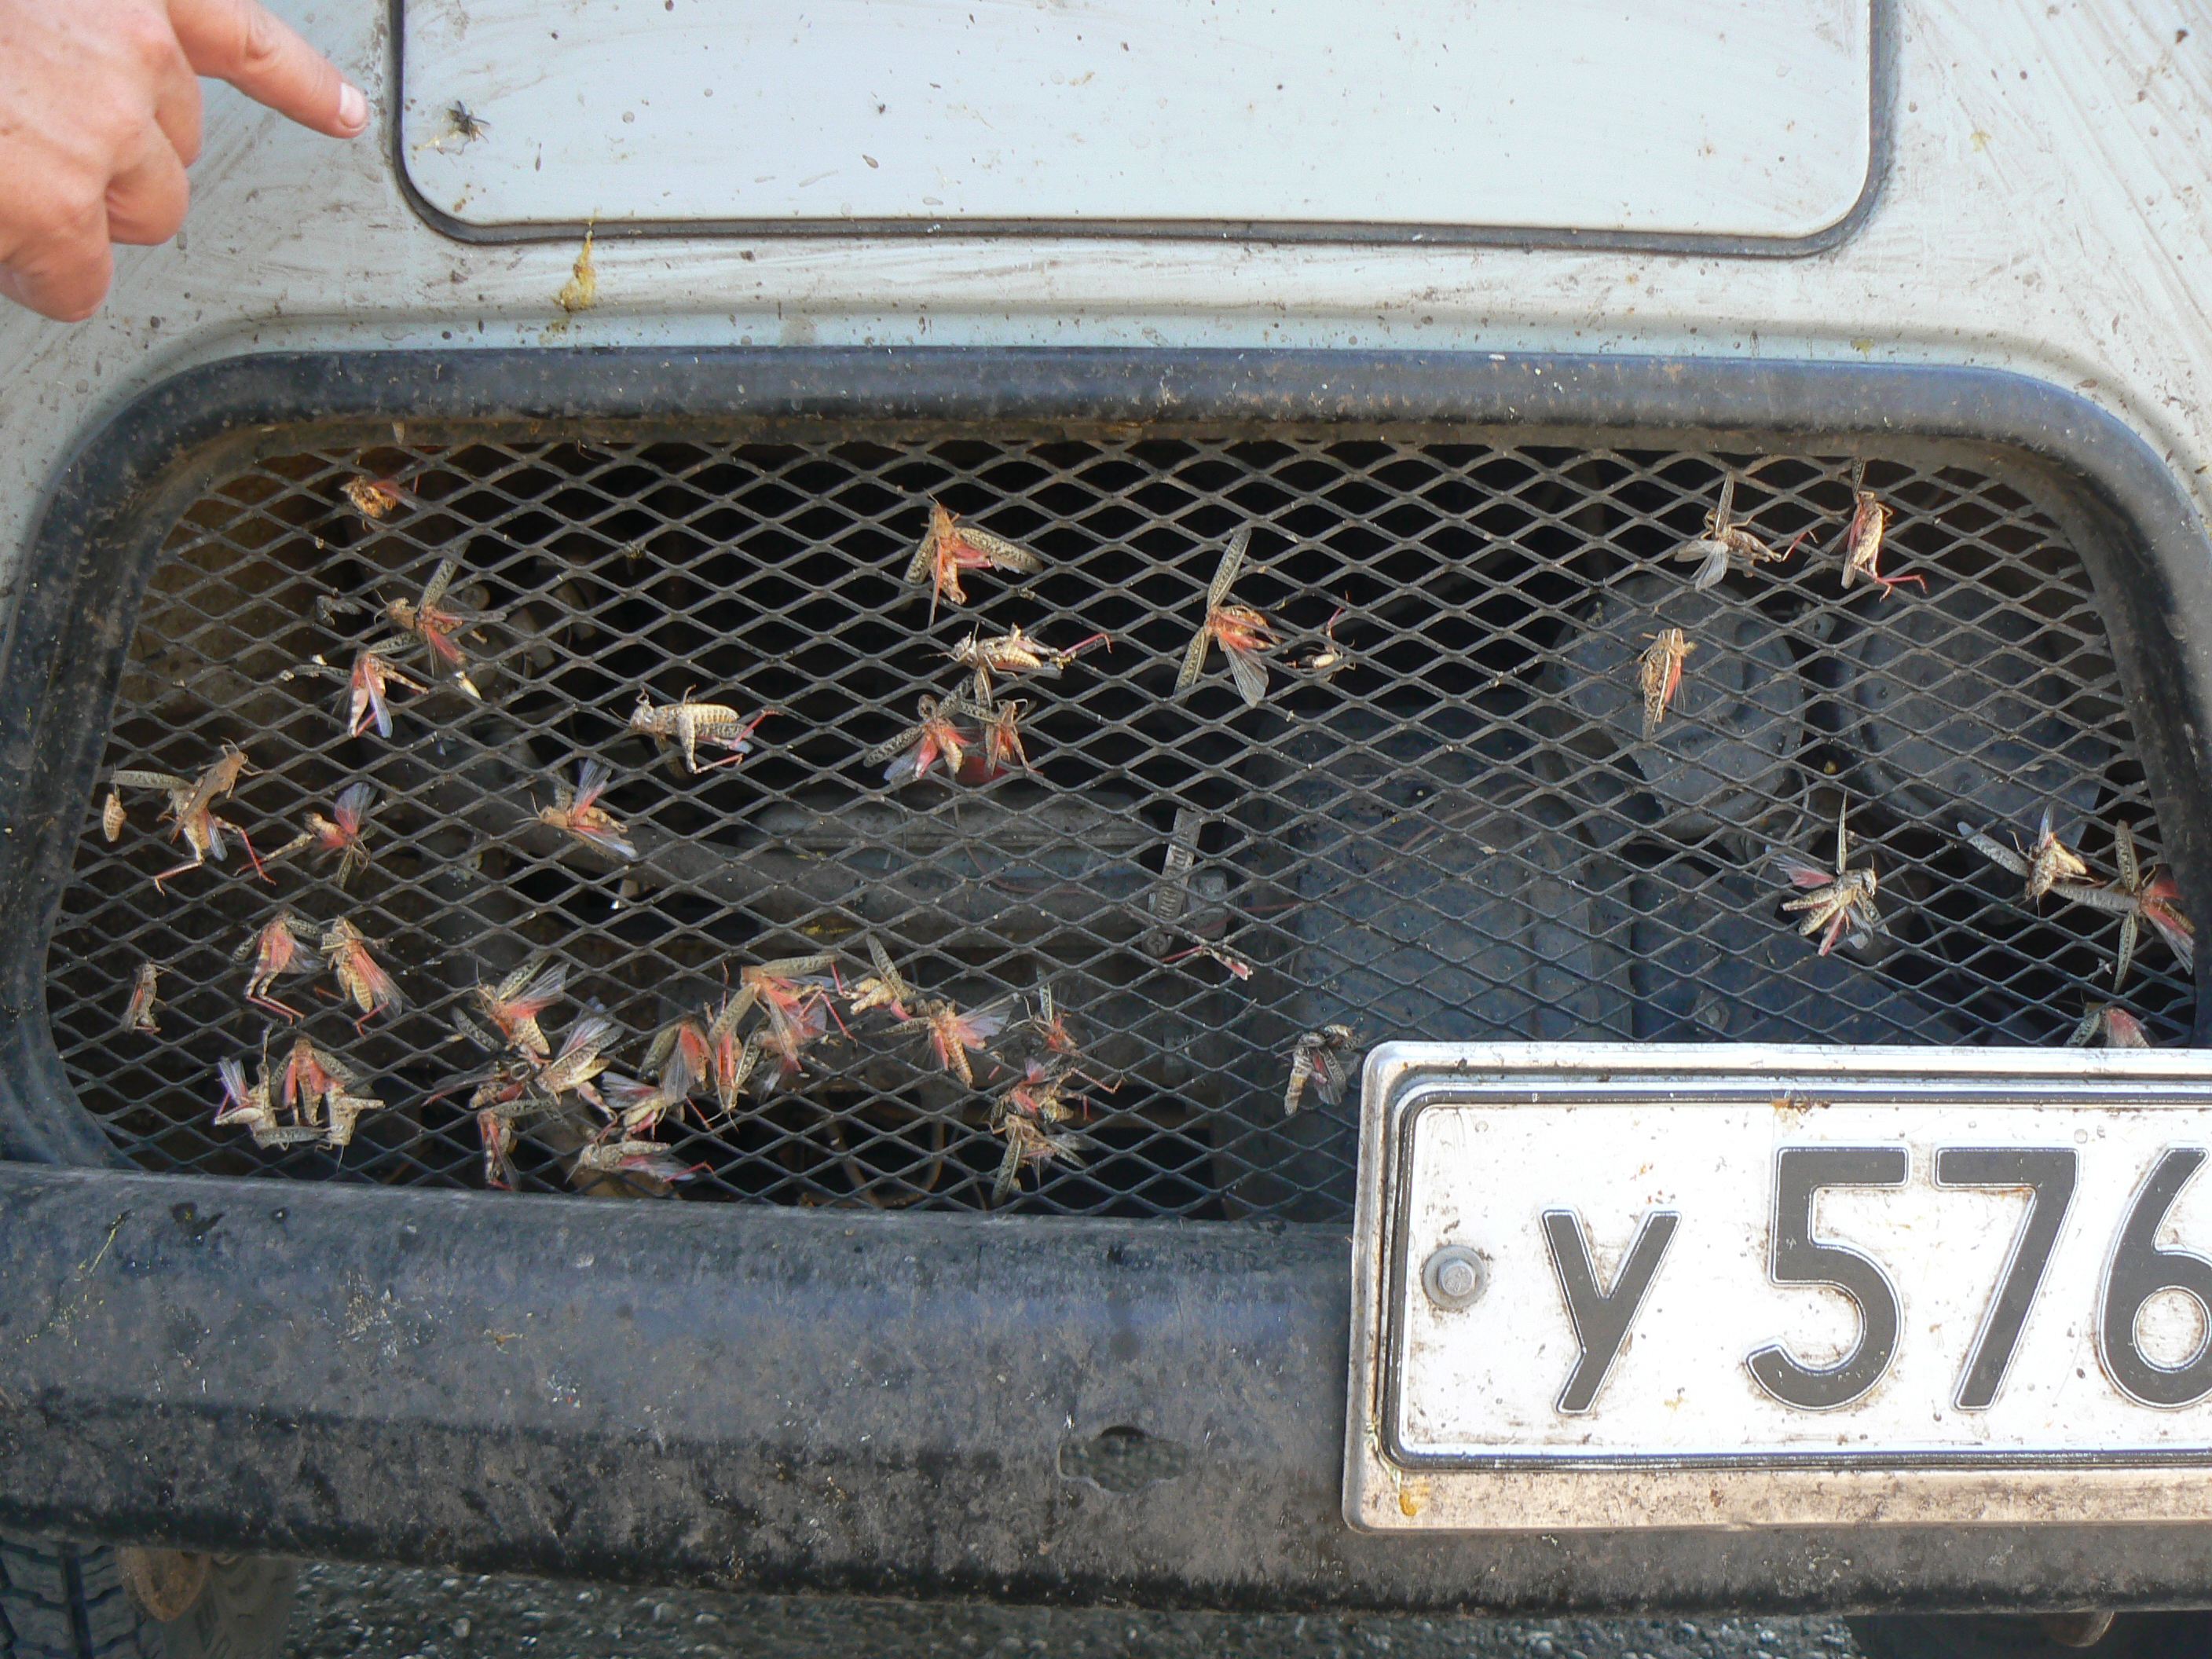 I velmi nadprůměrný entomolog pobije nejvíce hmyzu, když sedí za volantem. Průměrný řidič kamionu má za rok na svědomí podstatně více hmyzích životů než všichni nadšení sběratelé dohromady. Foto Lukáš Čížek